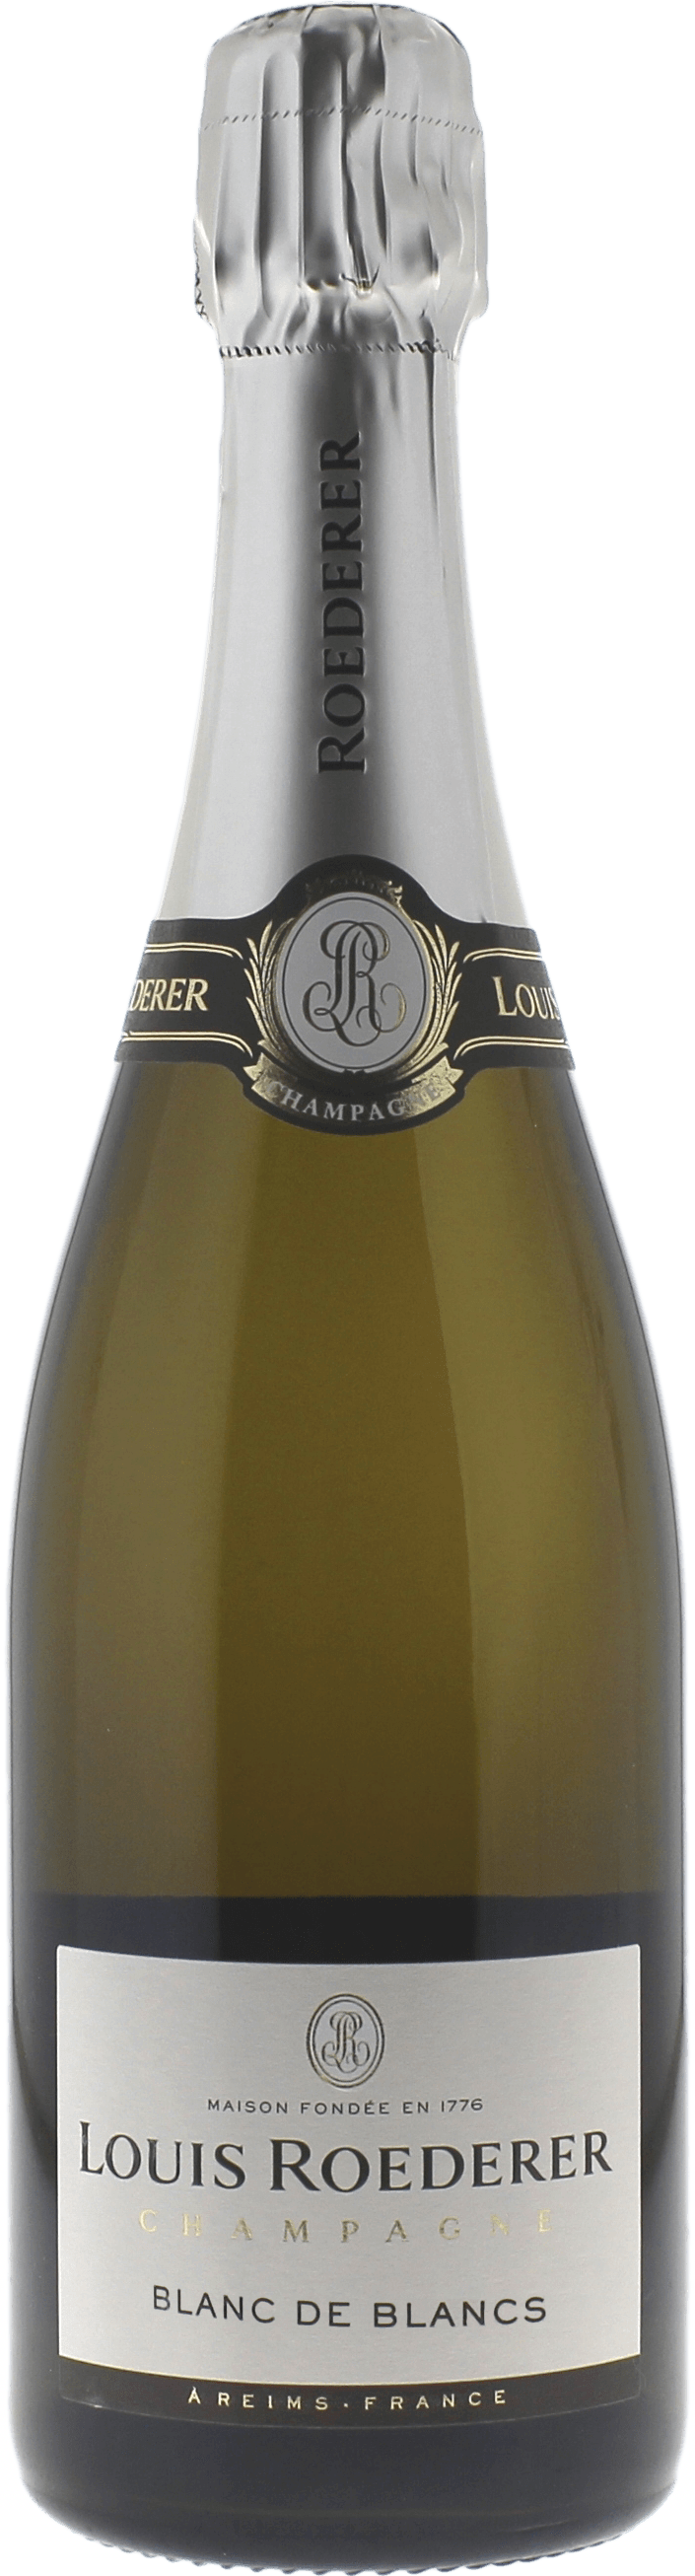 Louis roederer blanc de blancs 2013  Roederer, Champagne